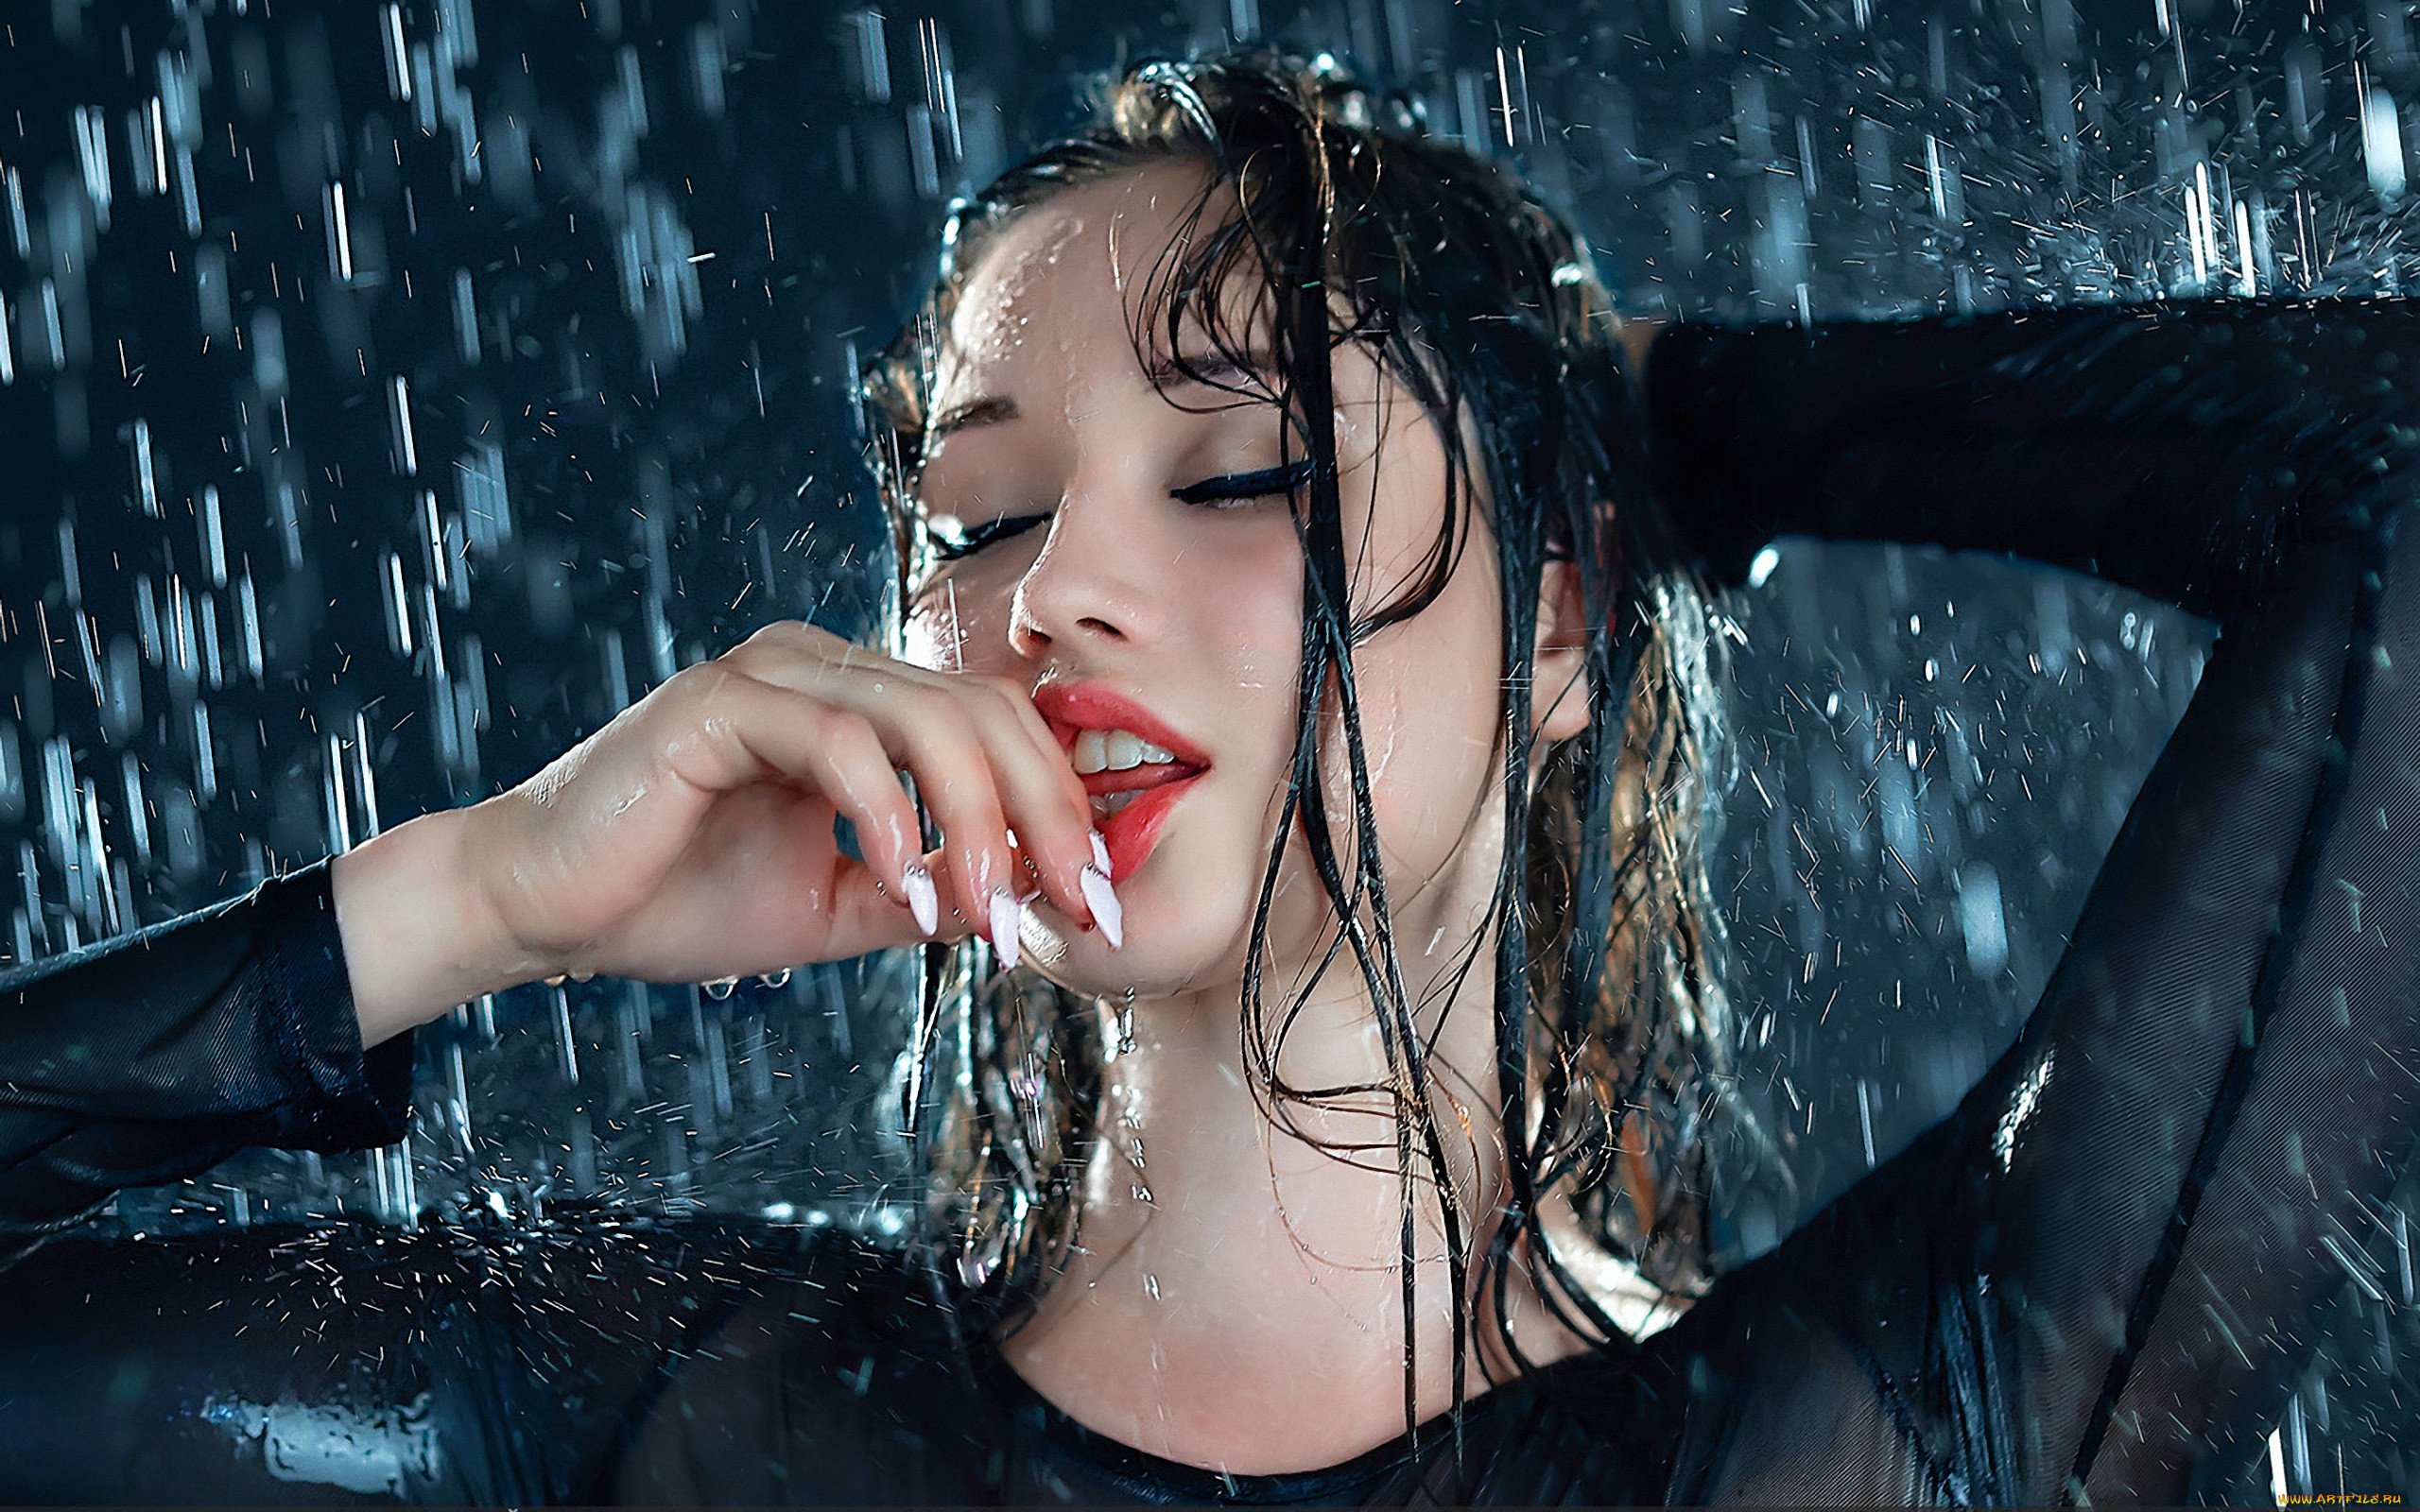 Очень красивая девушка с мокрыми волосами стоит под струями воды